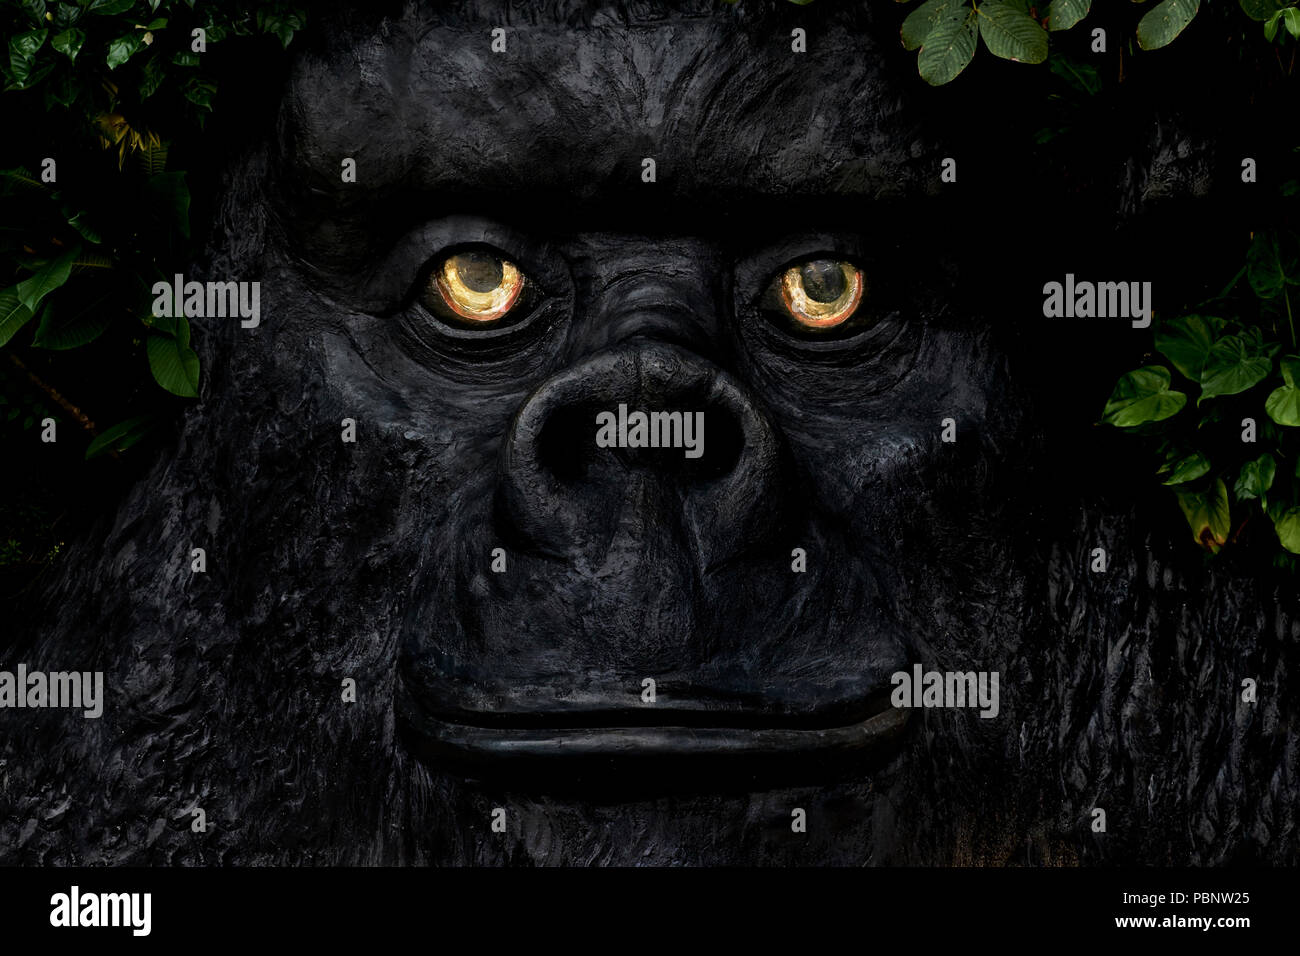 Gorilla face statue Stock Photo